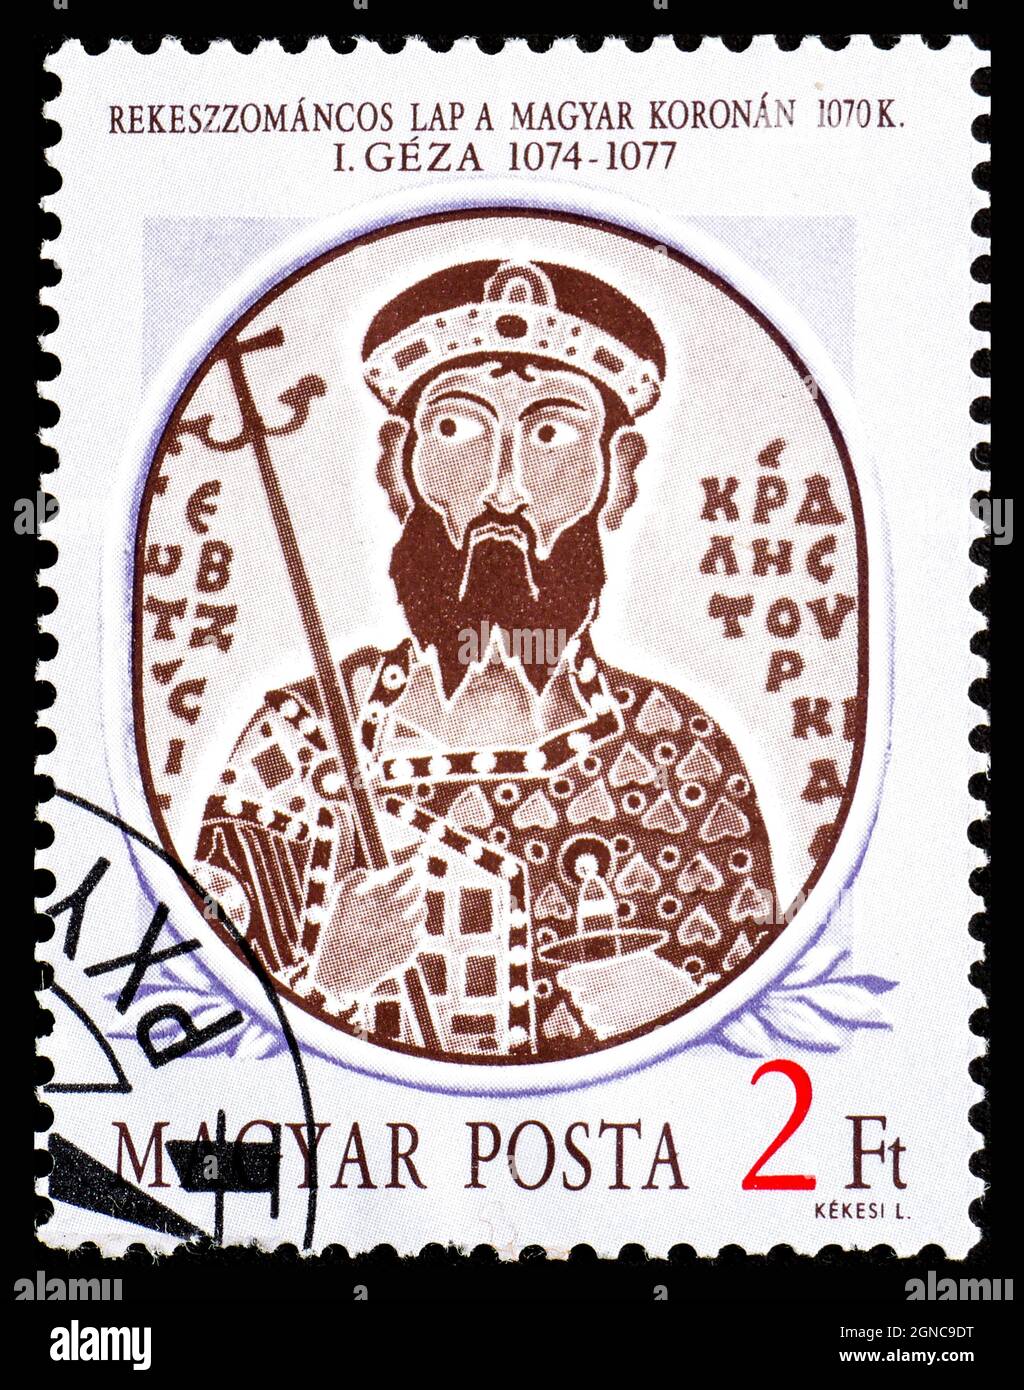 UNGHERIA - CIRCA 1986: Un francobollo stampato in Ungheria dai Re Ungheresi 1° numero mostra Geza i ritratto smalto sulla corona Ungherese, 1070 Foto Stock